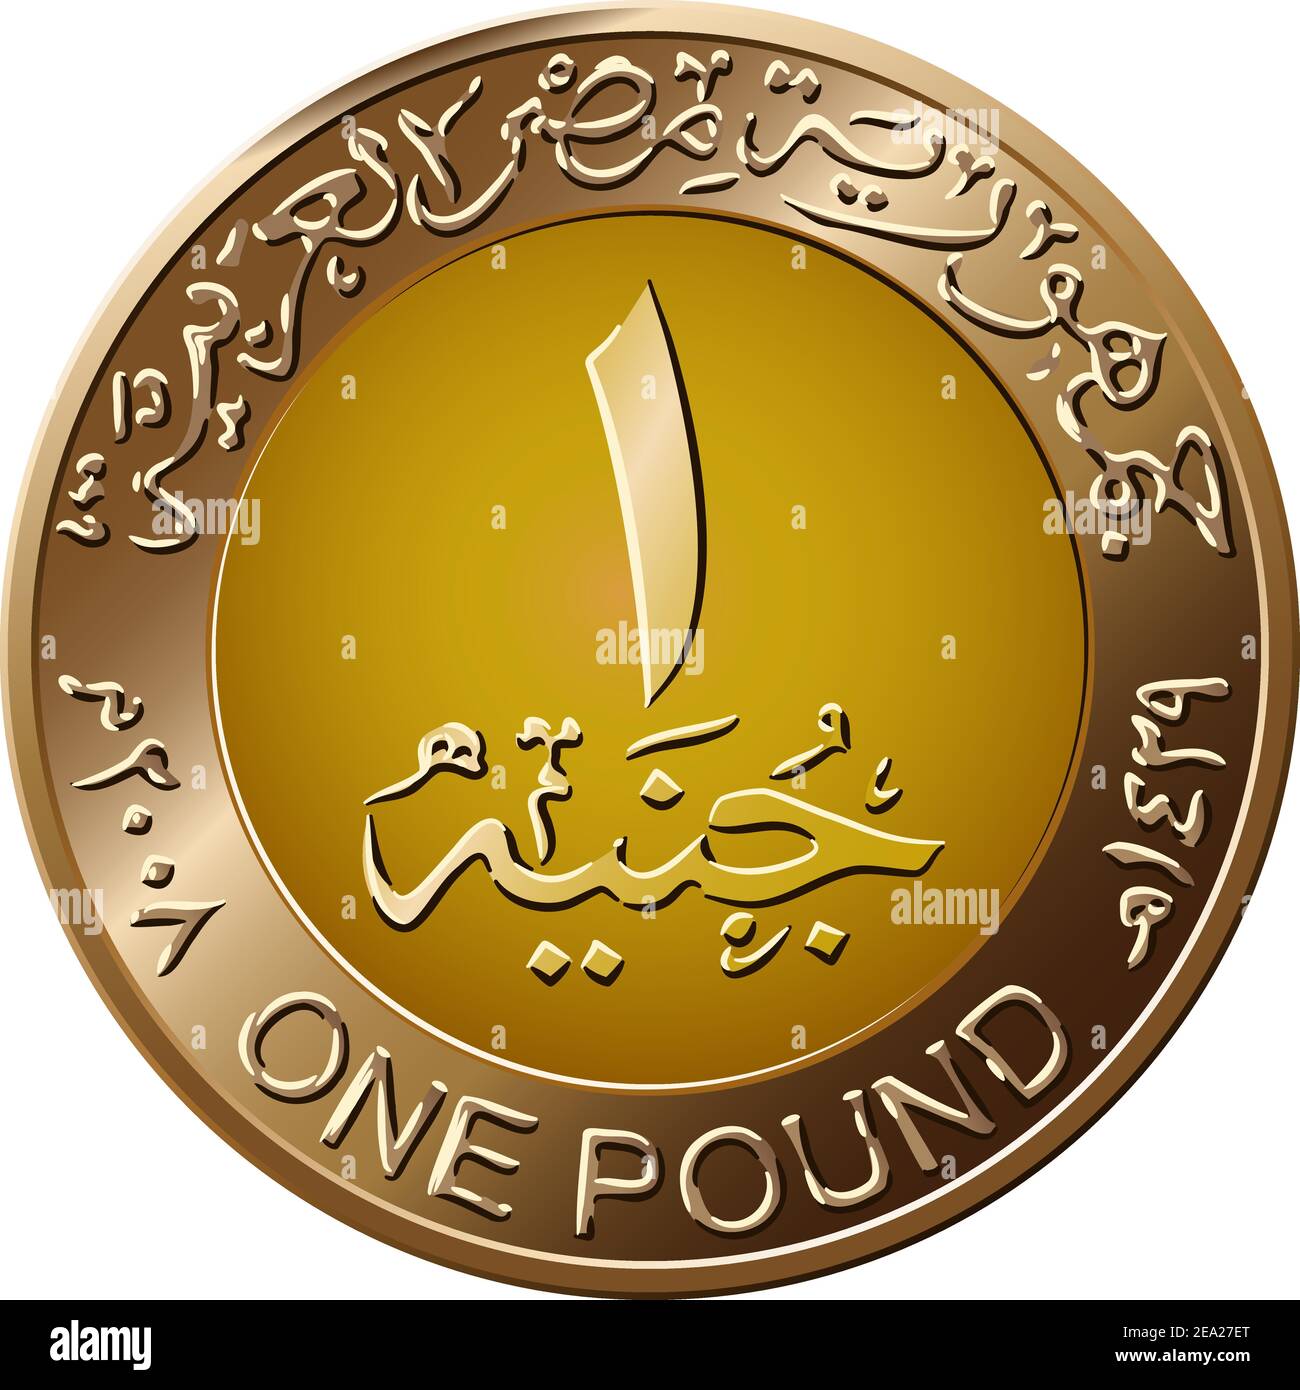 Il Mone della Repubblica Araba d'Egitto, moneta d'oro di 1 libbra, inverso con valore in arabo ed in inglese Illustrazione Vettoriale